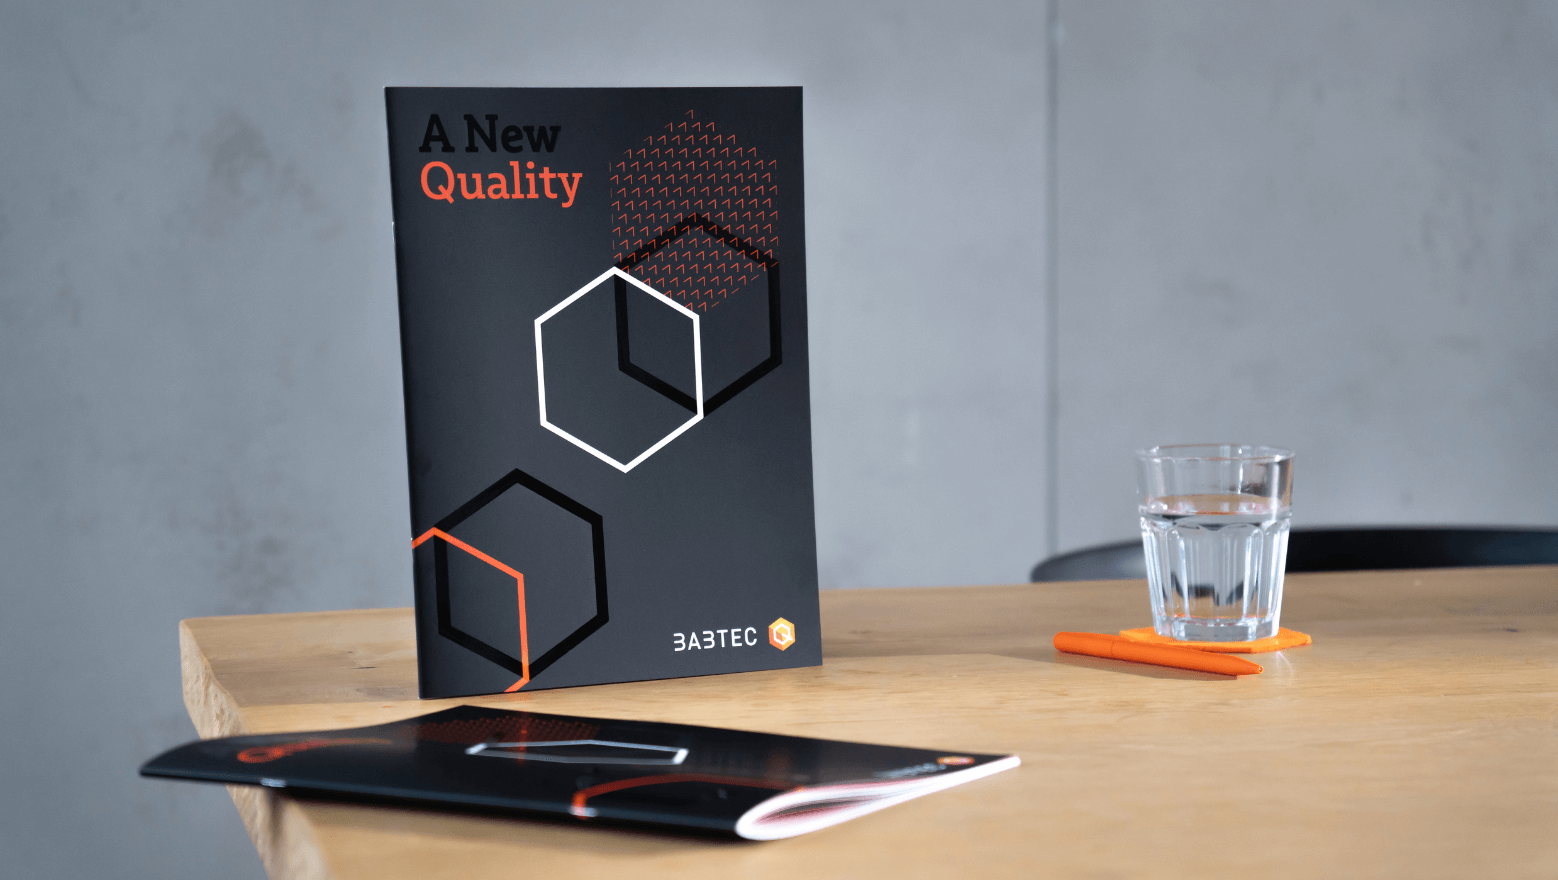 Broschüre "A new Quality" auf einem Tisch